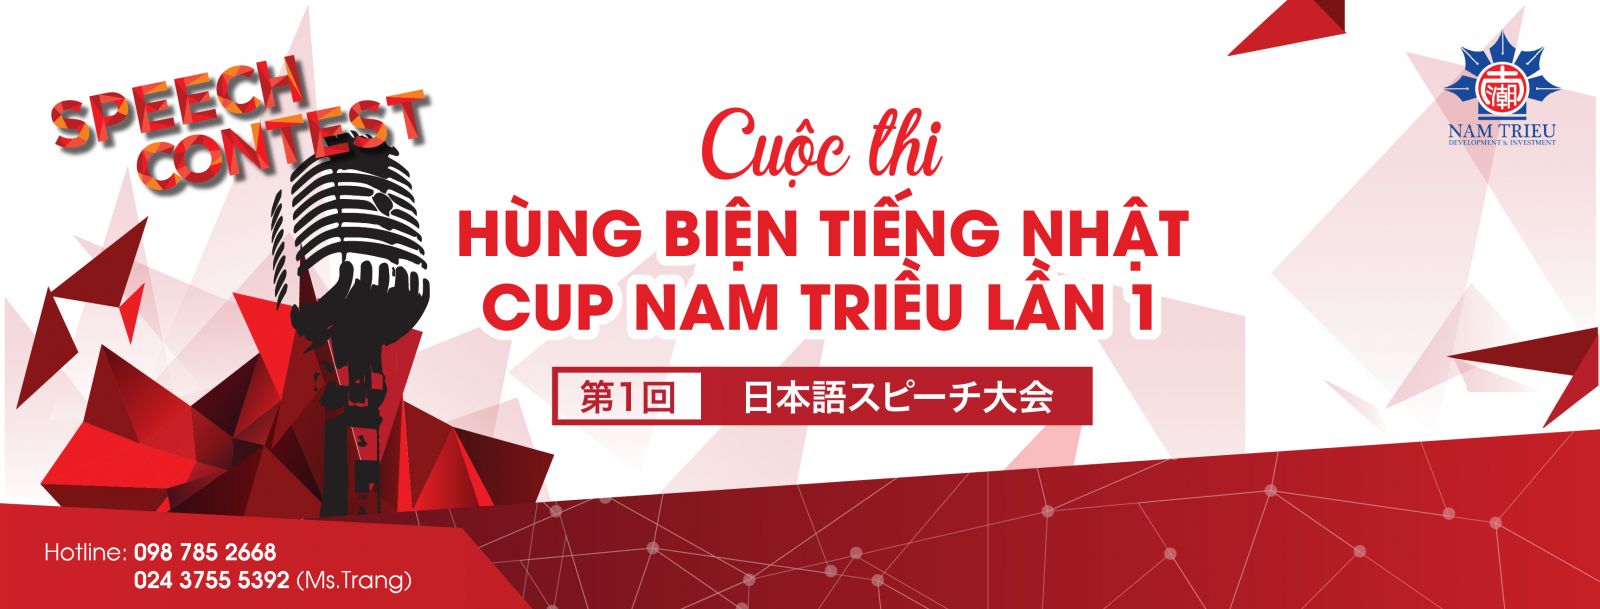 Cuộc thi hùng biện tiếng Nhật cup Nam Triều 2019